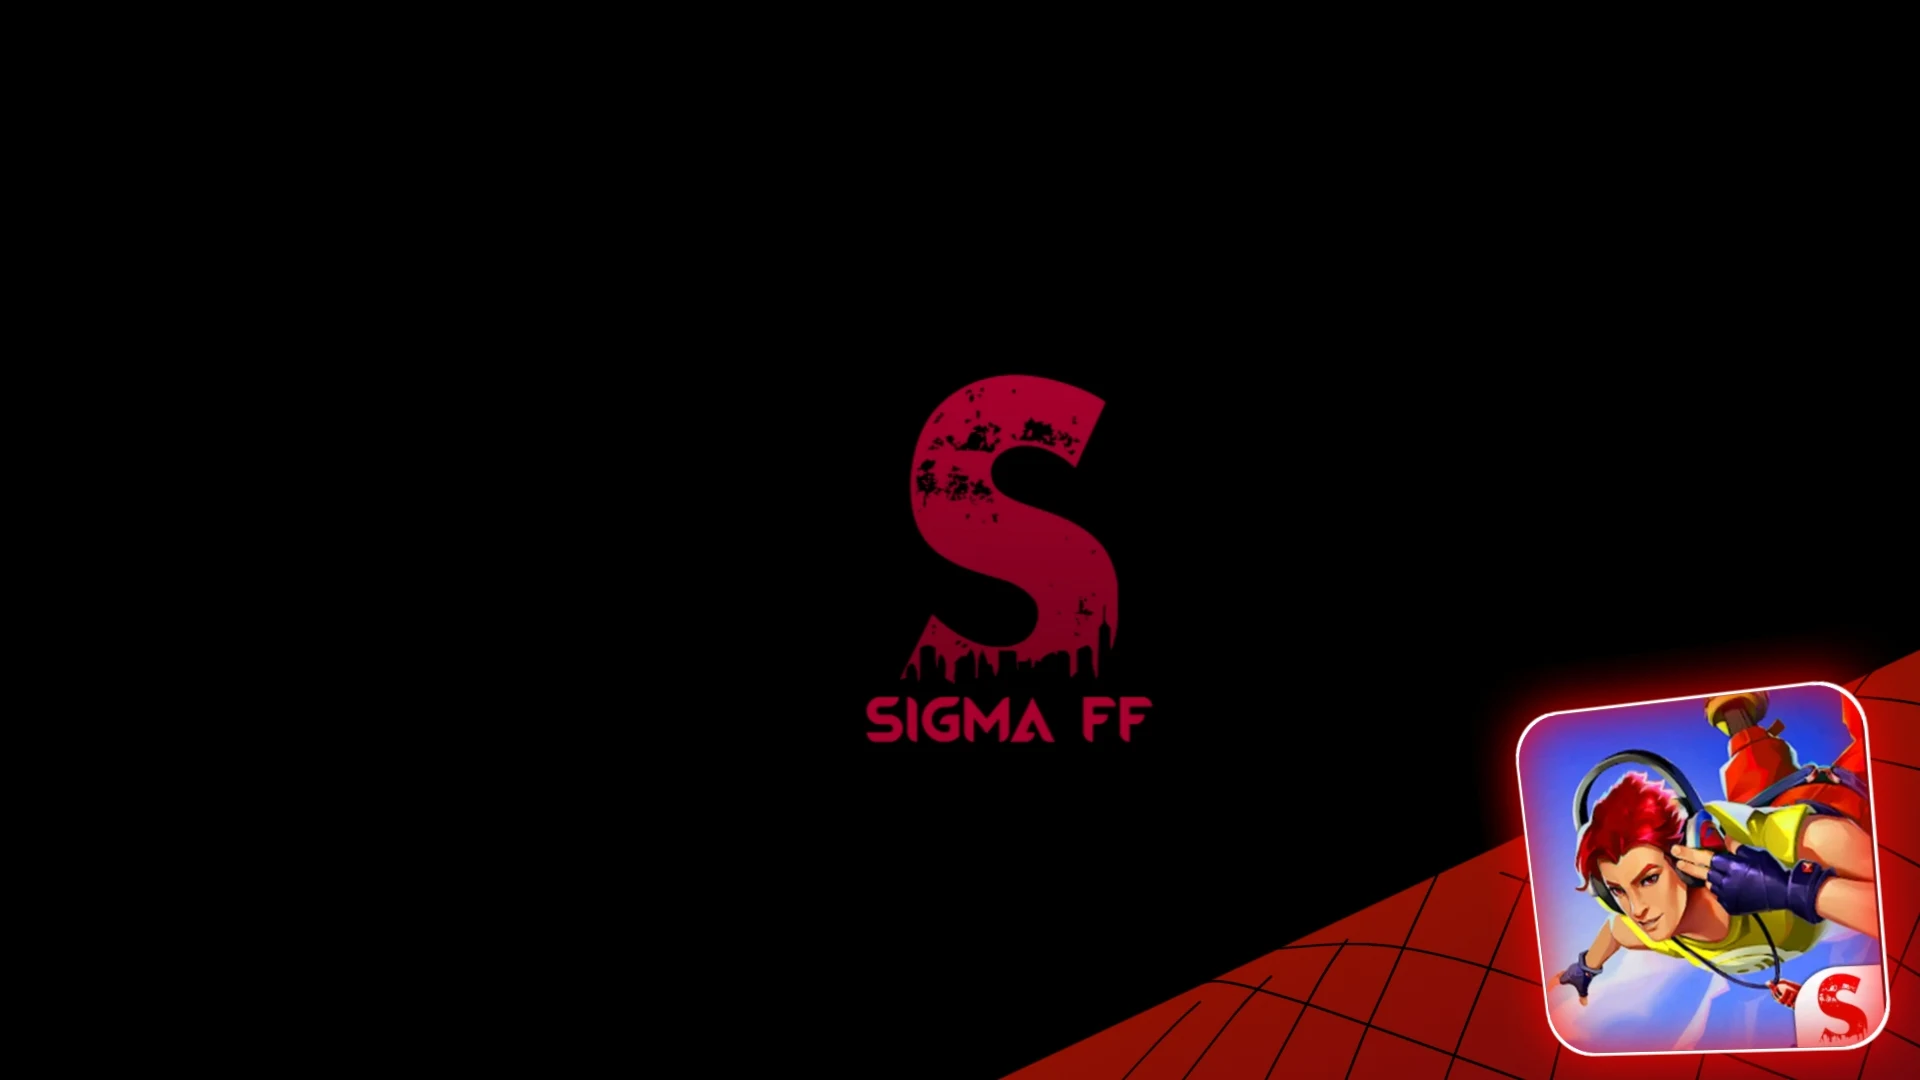 Sigma download. Sigma фф. Фф Сигма/Сигма. Постер с ff5.